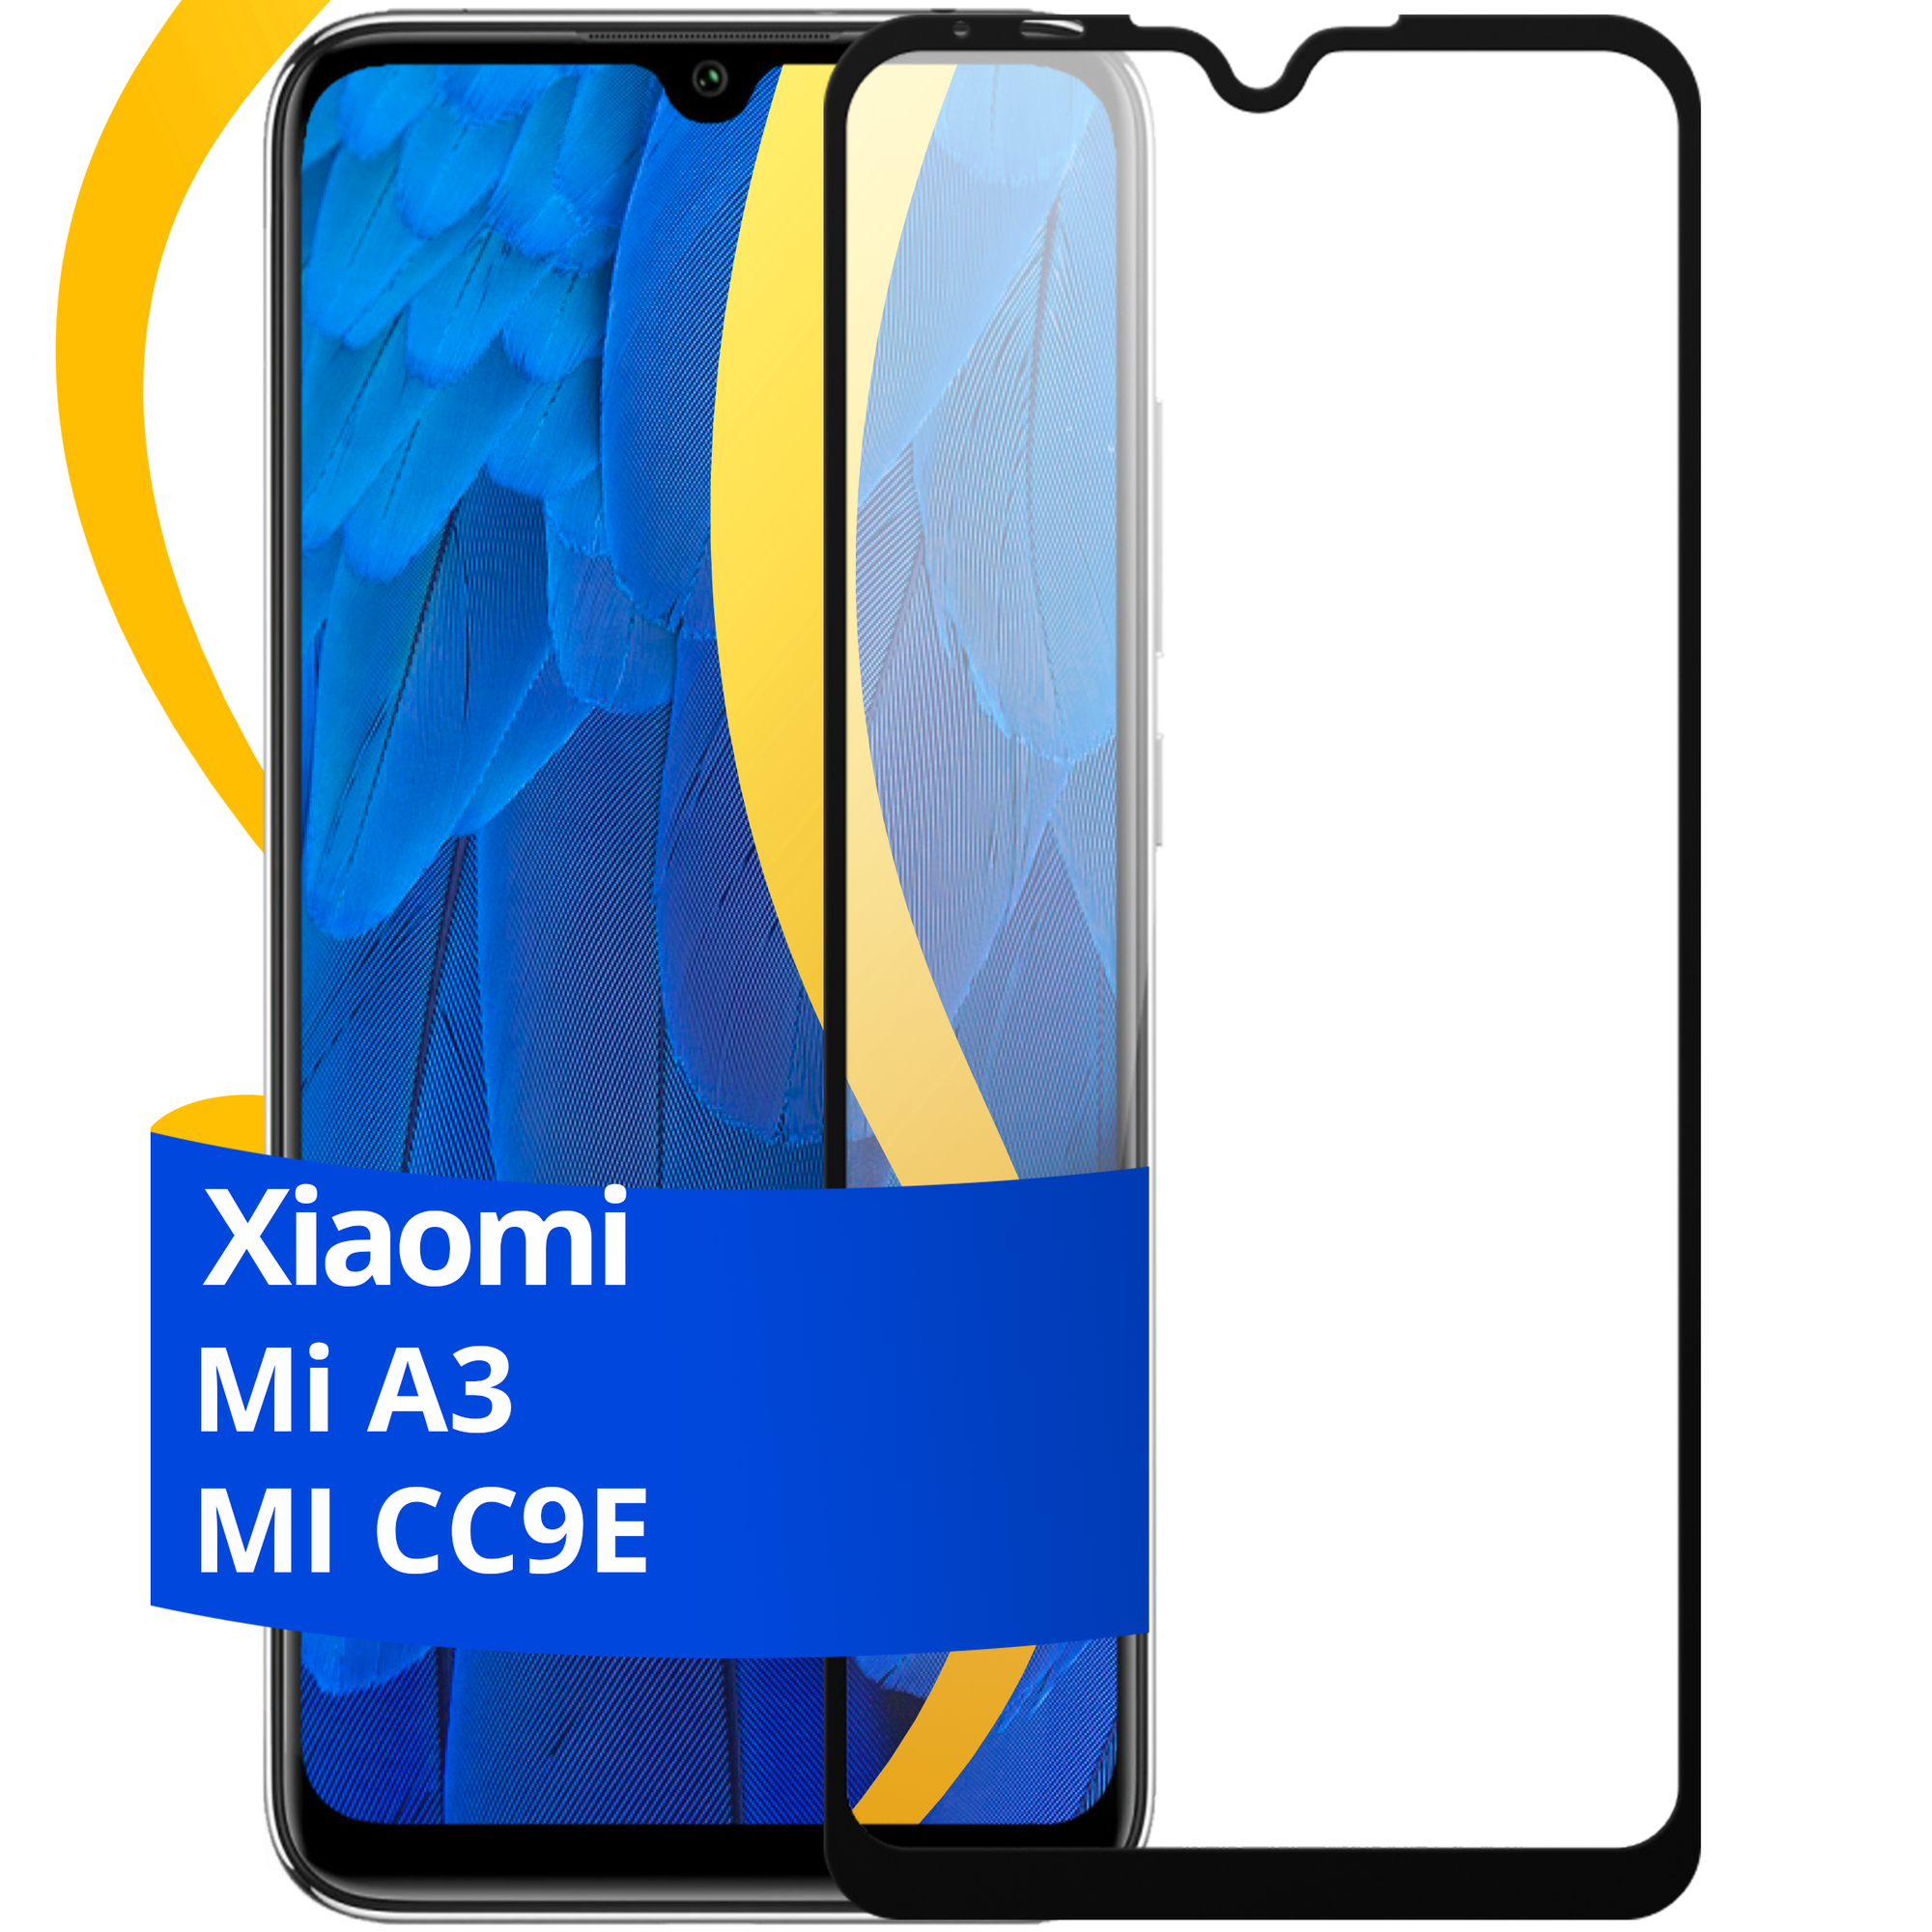 Полноэкранное защитное стекло на телефон Xiaomi Mi A3 и Mi CC9E / Противоударное стекло дляартфона Сяоми Ми А3 и Ми СС9Е с олеофобным покрытием